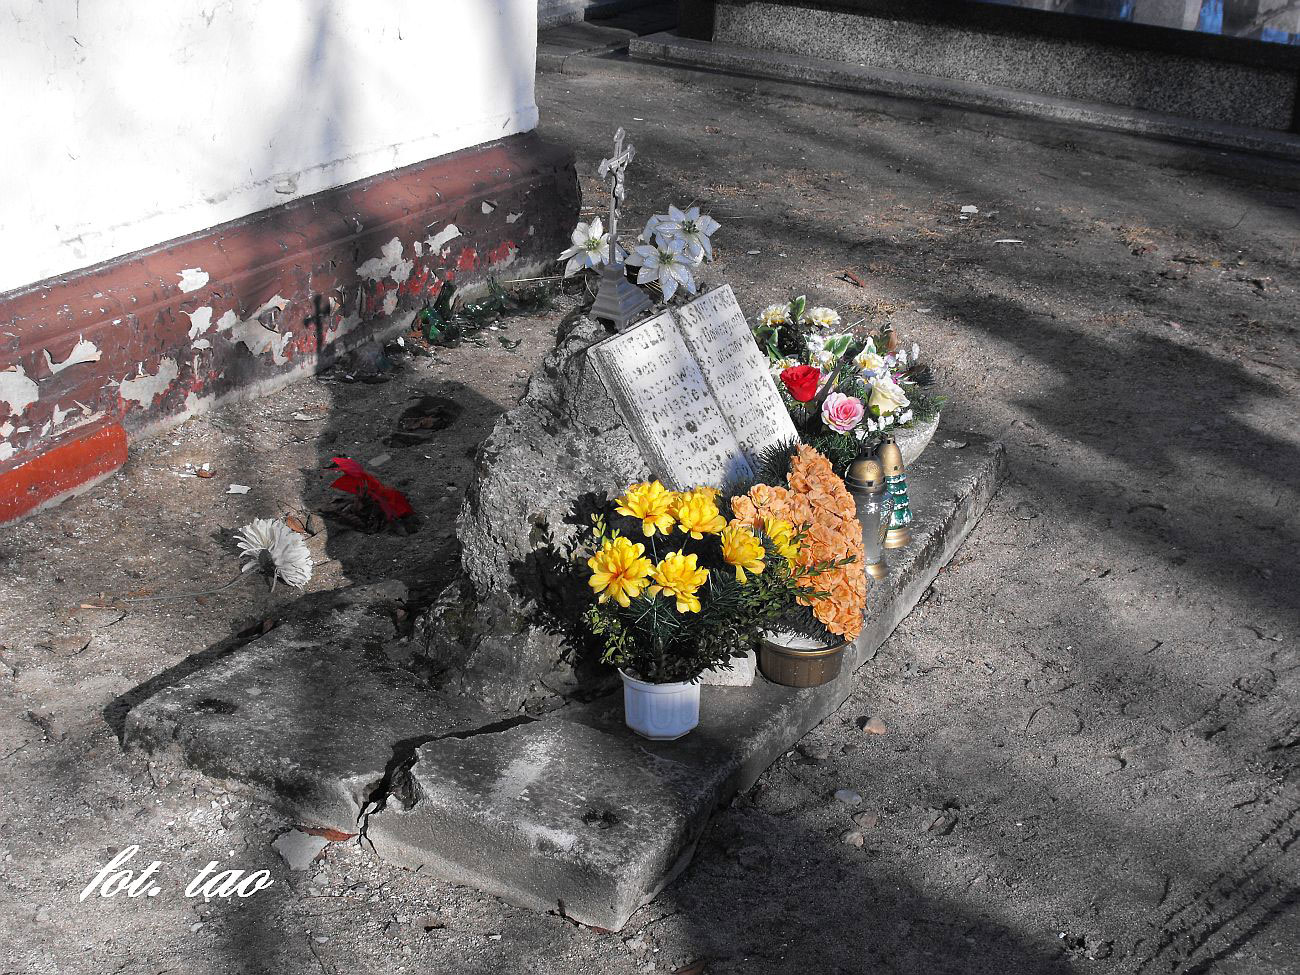 Śladami interwencji Pawła Gąsiorowskiego w sprawie ratowania zabytkowych nagrobków na Sierpeckim cmentarzu. Drogi panie Pawle jak widać zrobiono w tej sprawie bardzo 